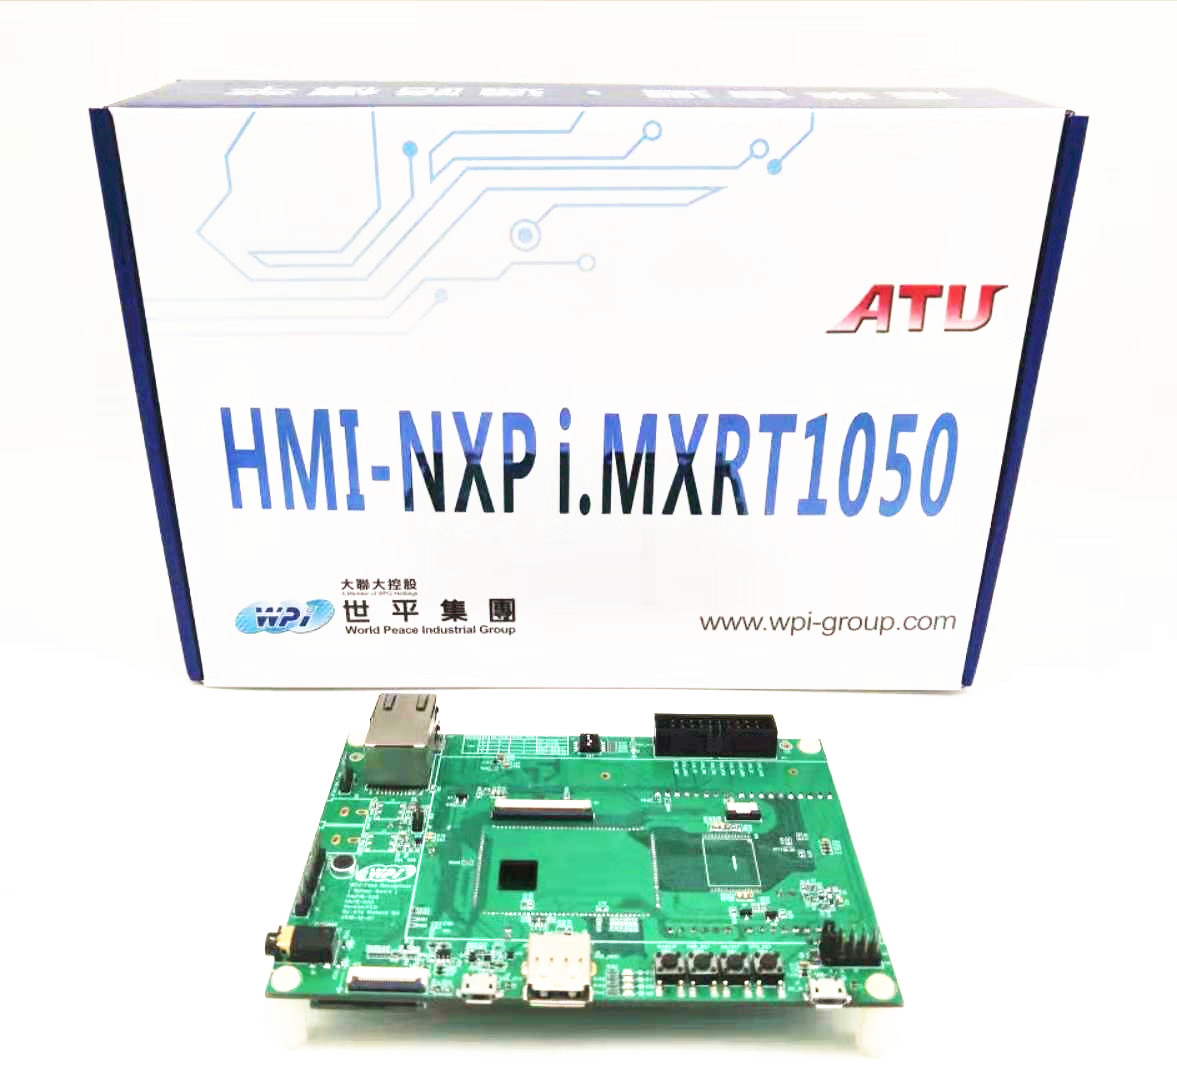 DVK1909_HMI-NXP I.MXRT1050